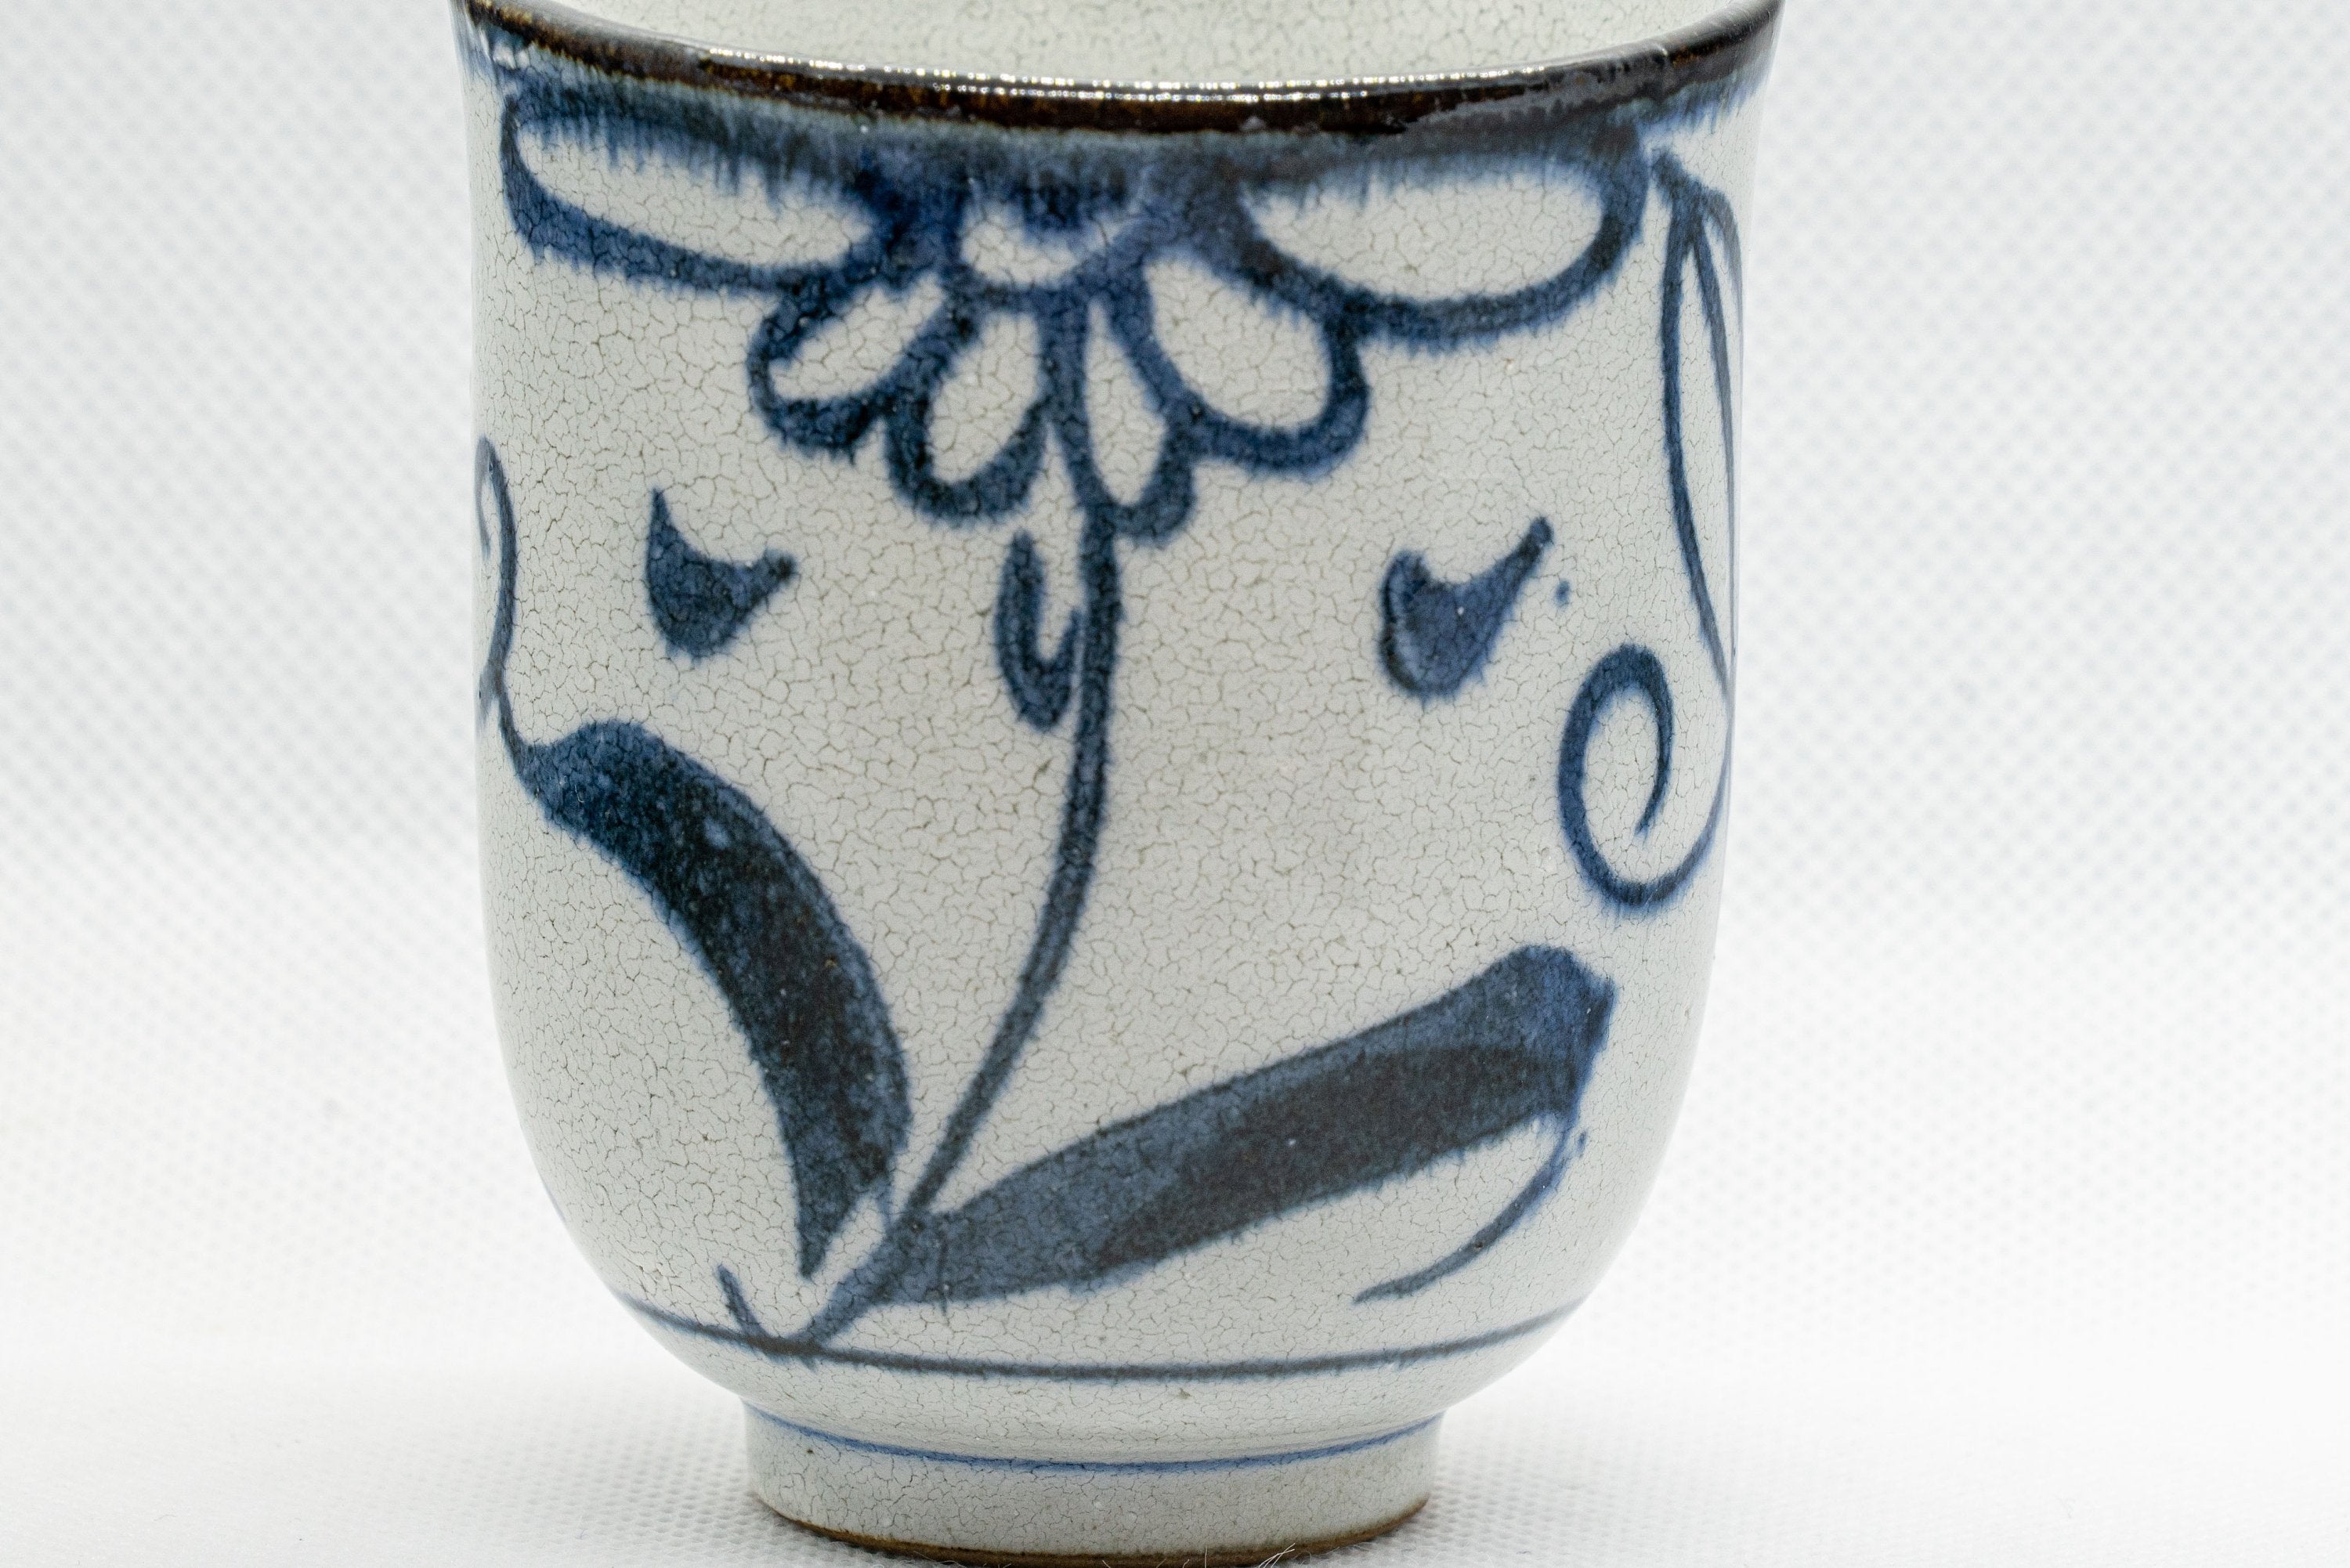 Japanese Teacups - Pair of Floral Tsutsu-gata Yunomi - 150ml